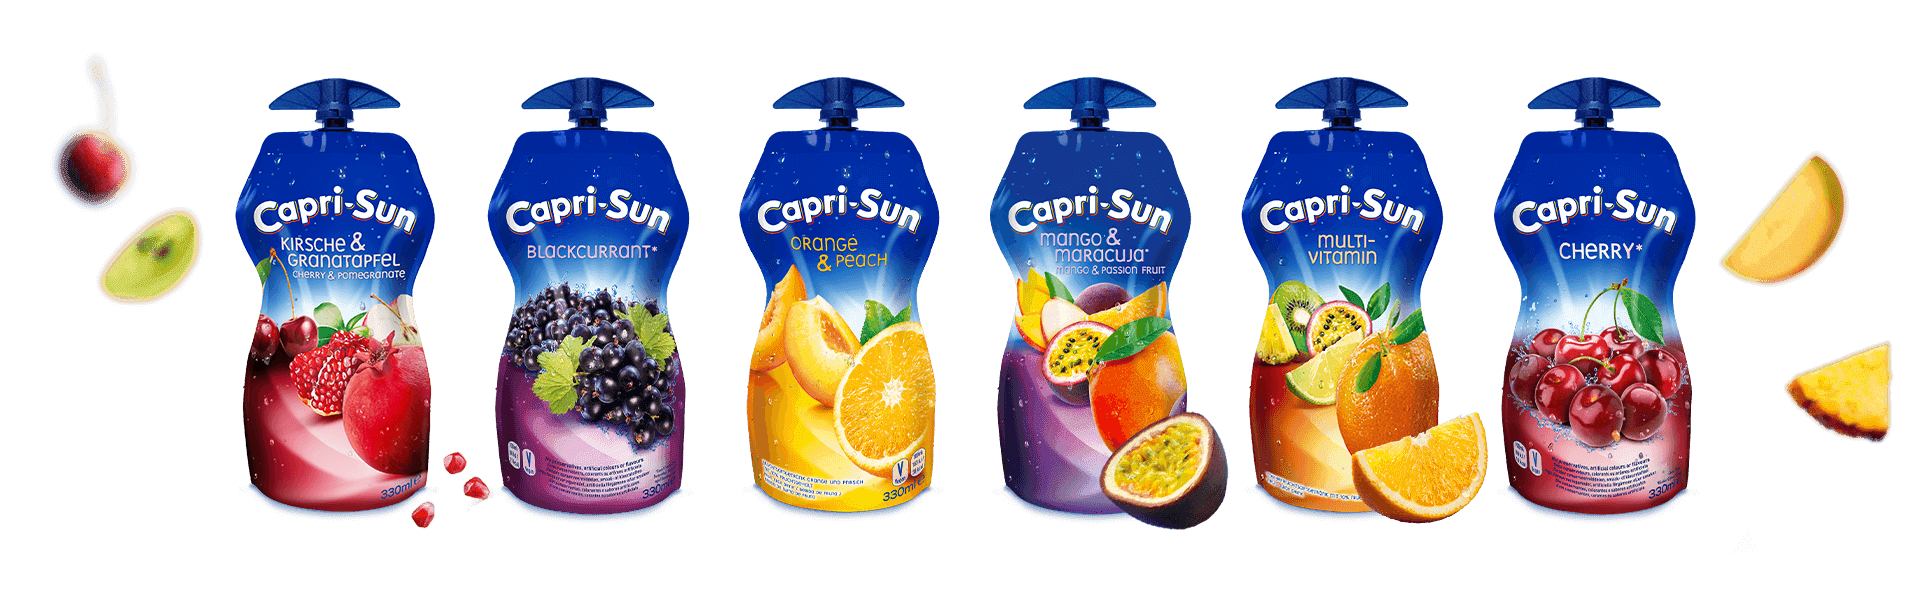 2 liter capri sun bottle